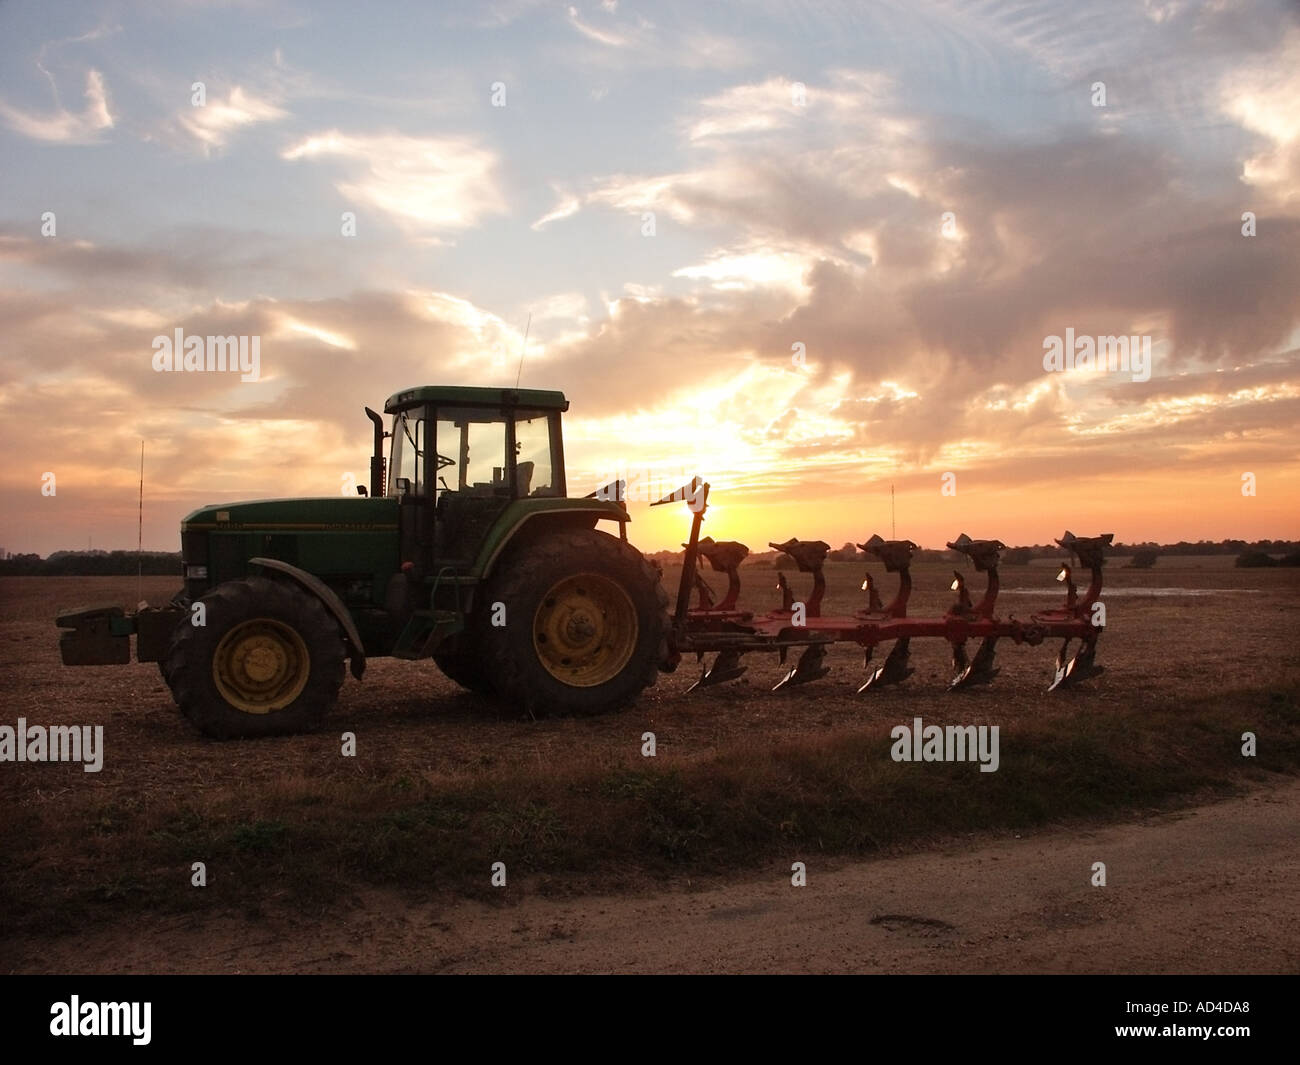 Sonnenuntergang Himmel & Silhouette des Bauern John Deere Traktor & Pflug geparkt auf Ackerland in Essex England UK Feld am Ende eines Arbeitstages Stockfoto